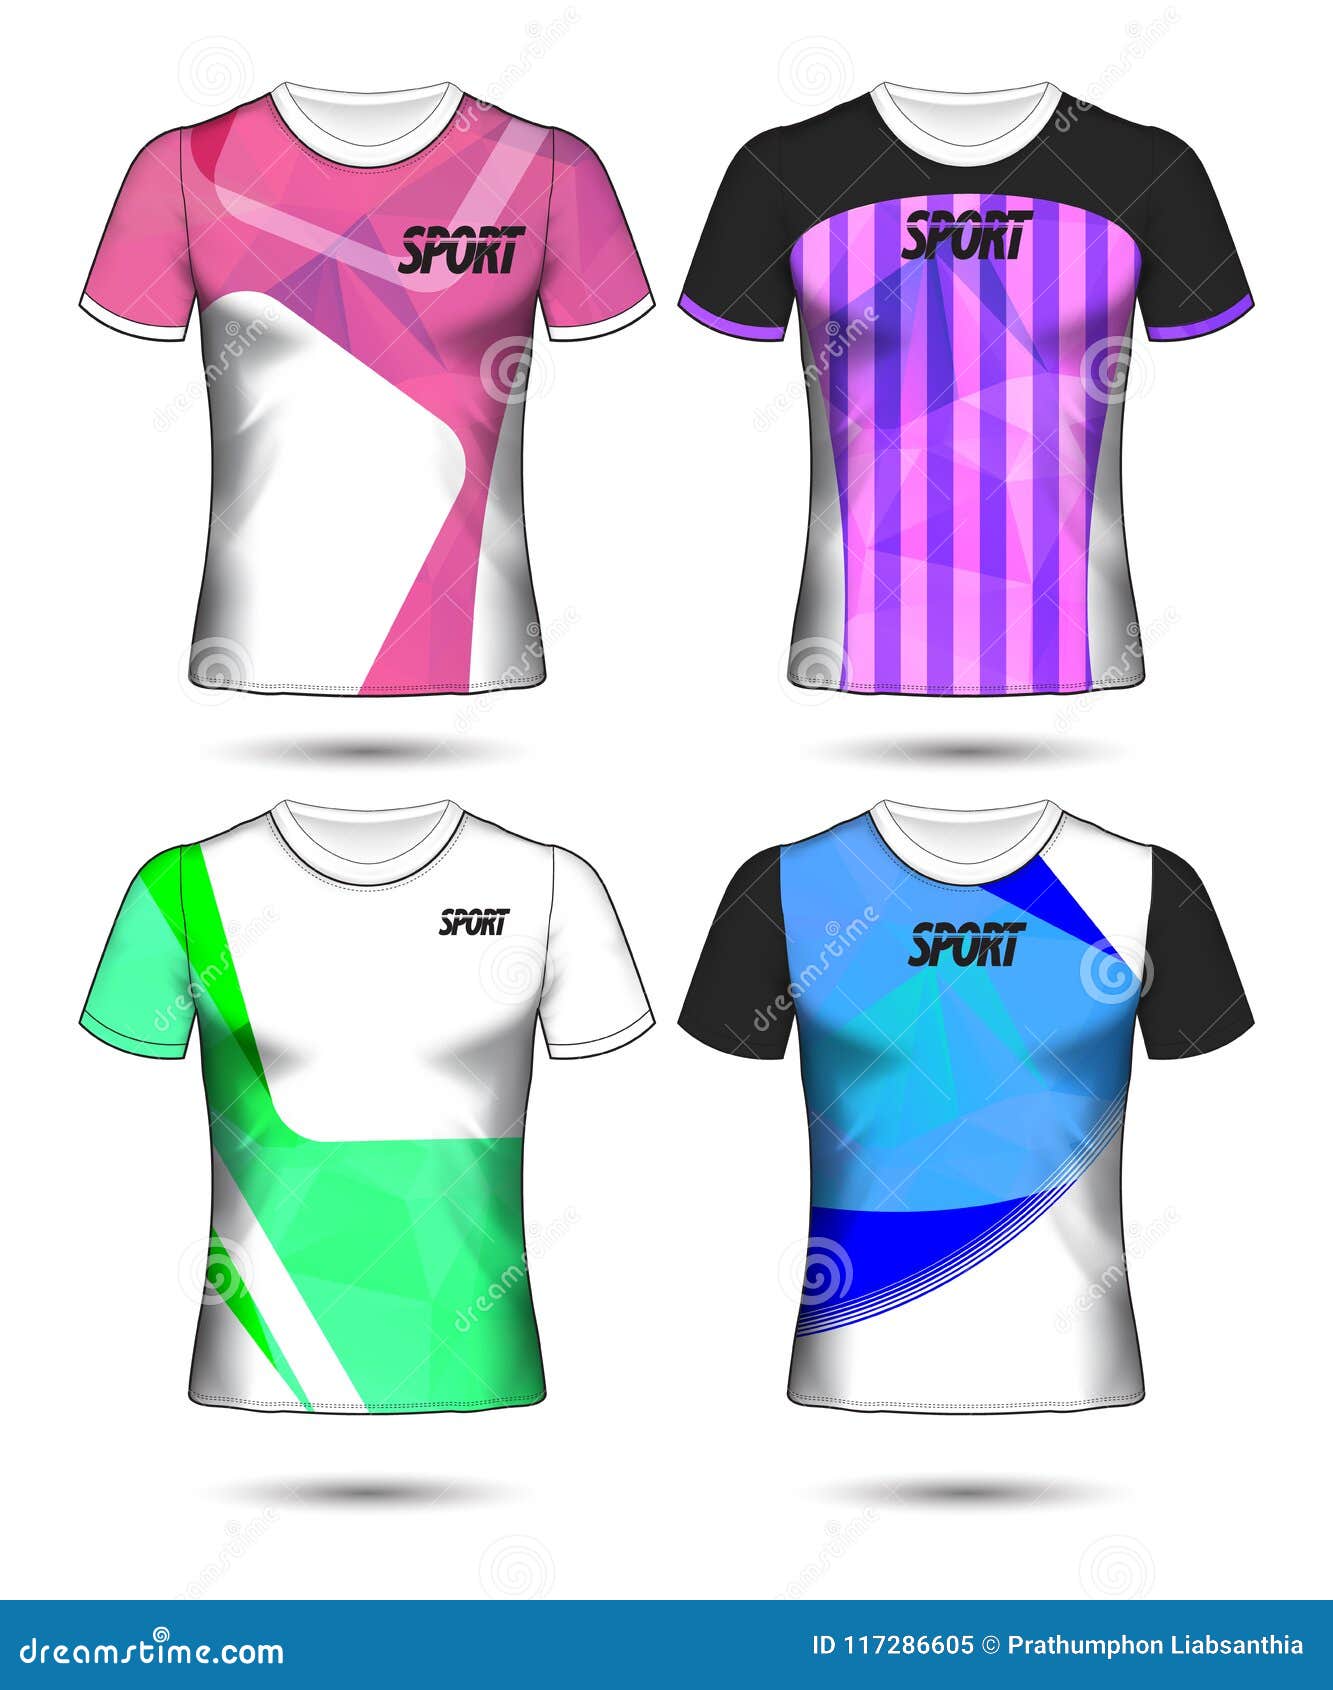 soccer jersey design for girl